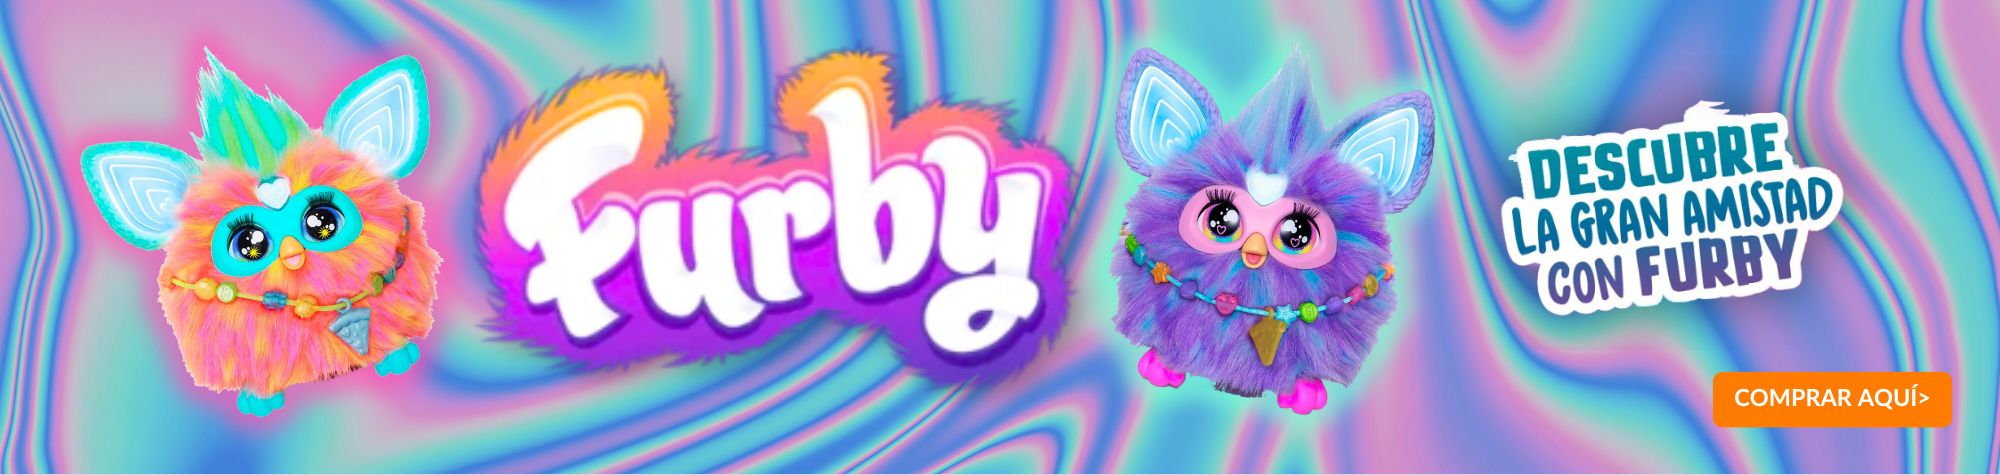 Juguetes Furby